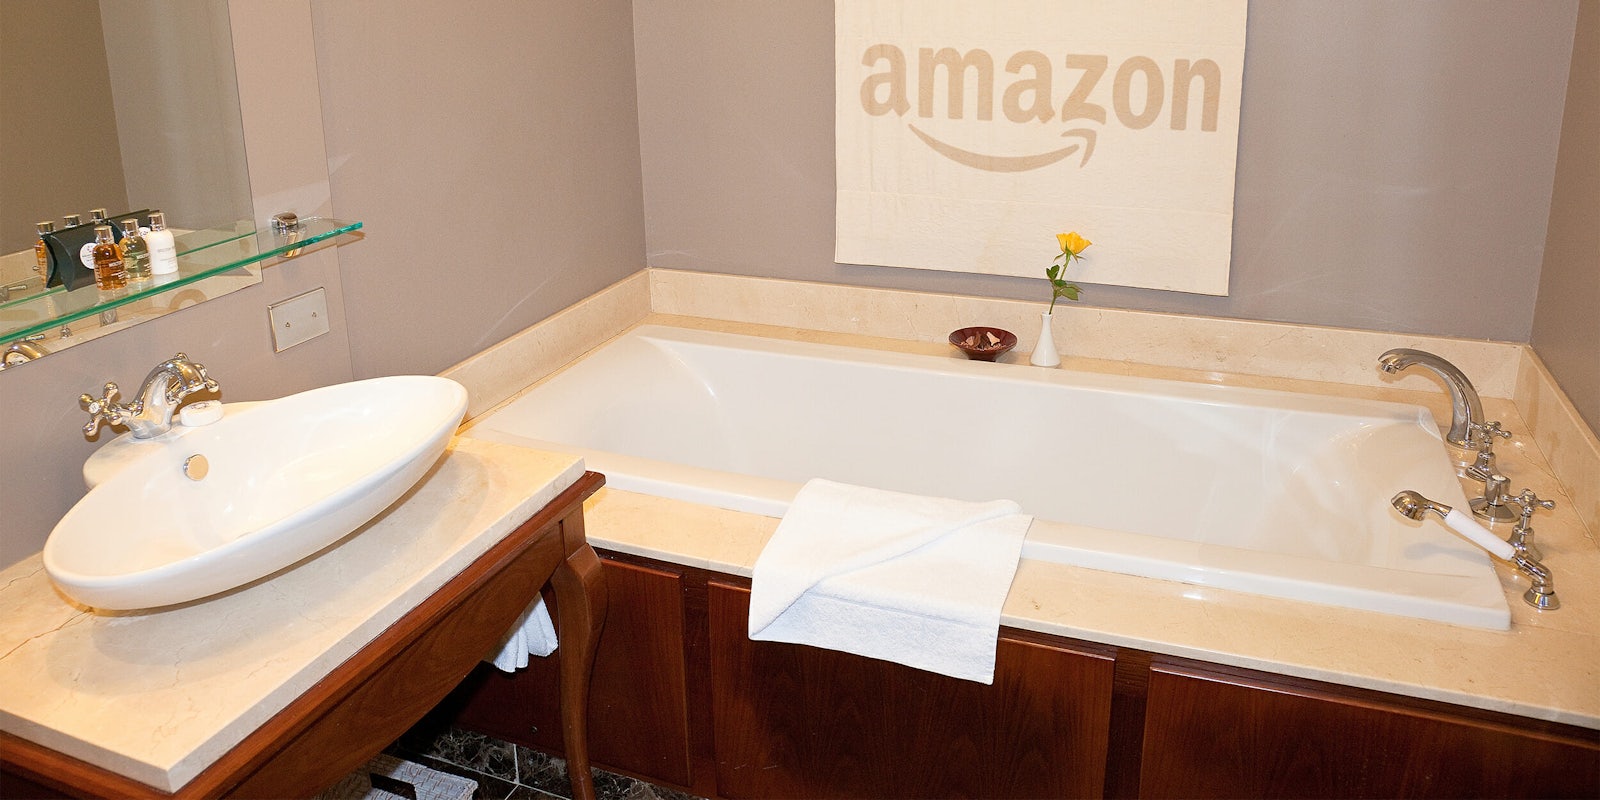 Bathroom with Amazon logo on towel